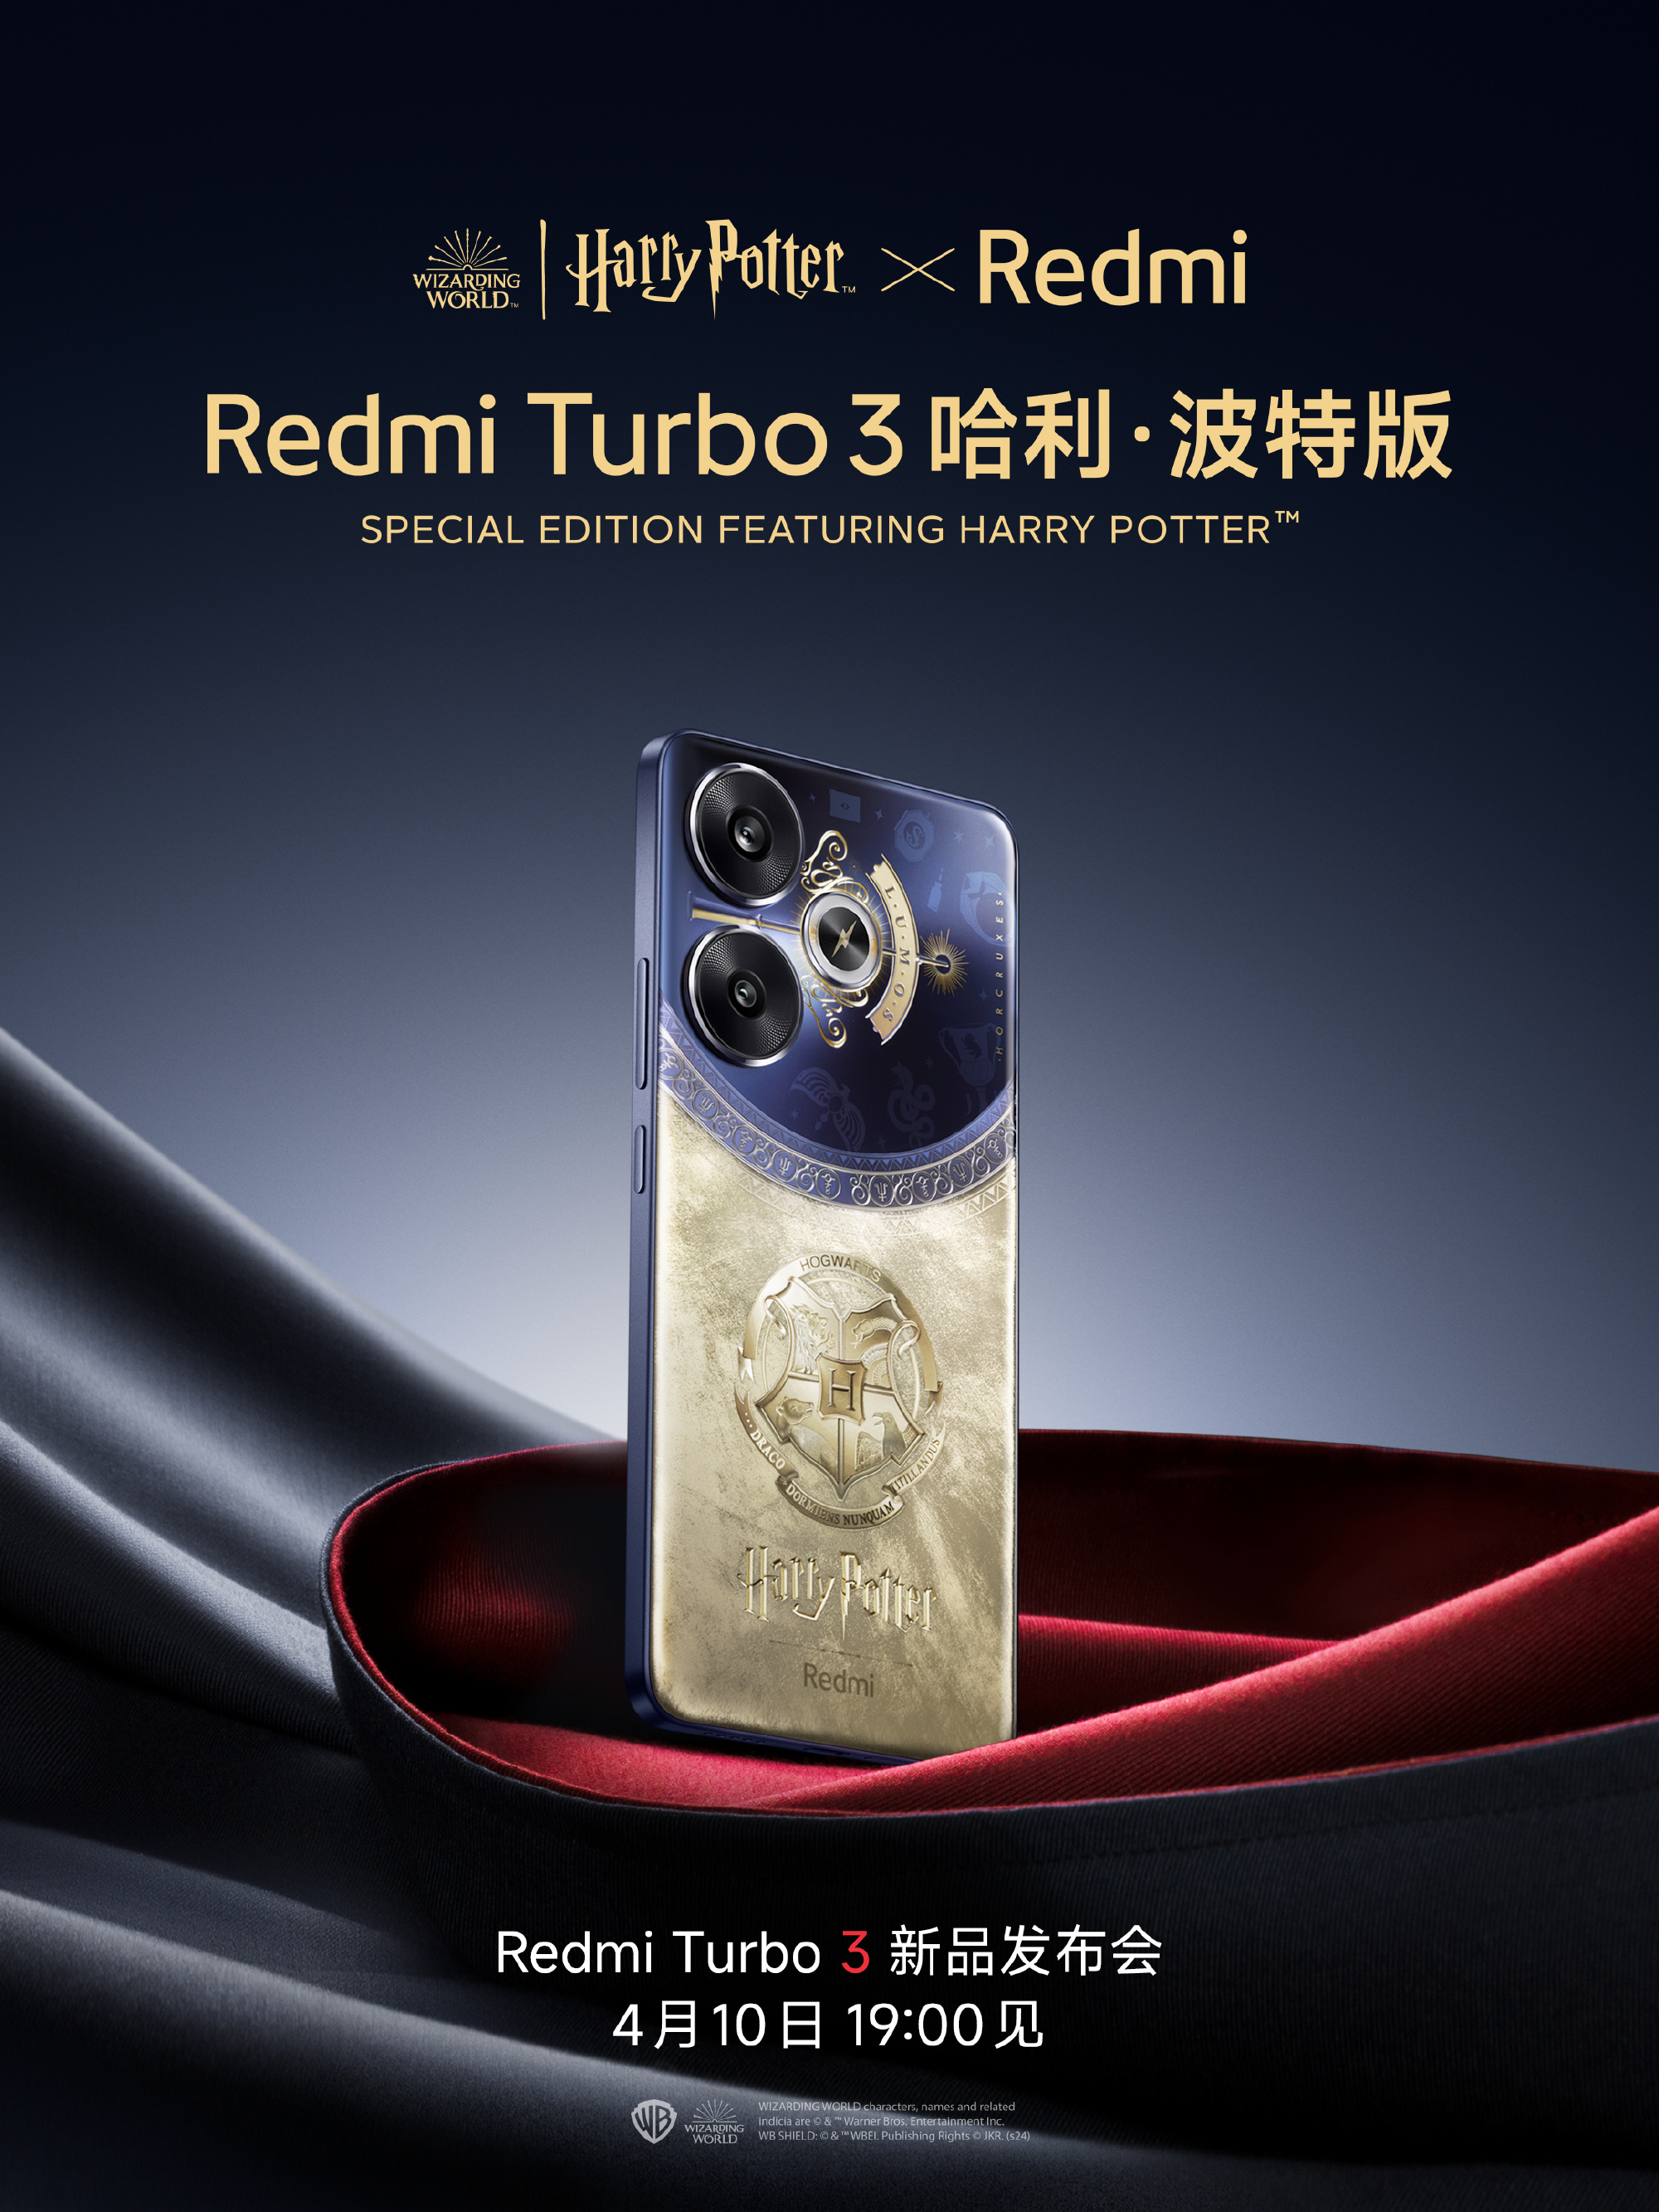 Chưa ra mắt, Xiaomi đã "nhá hàng" Redmi Turbo 3 và Redmi Pad Pro phiên bản Harry Potter cực đẹp, Potterheads đã chuẩn bị "lúa" chưa?- Ảnh 10.